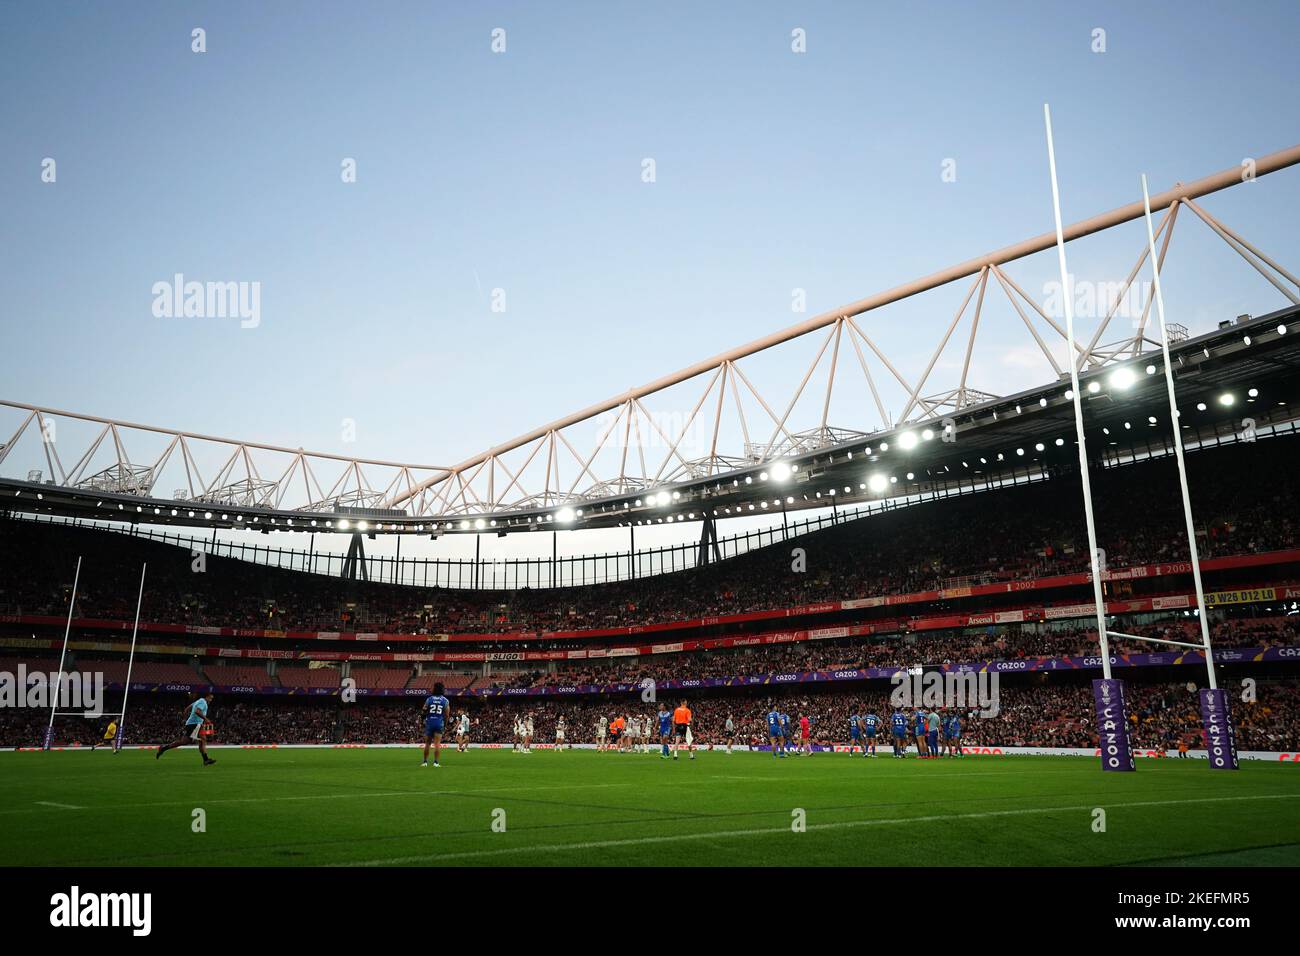 Una visione generale dell'azione durante la partita di semifinale della Coppa del mondo di Rugby all'Emirates Stadium, Londra. Data immagine: Sabato 12 novembre 2022. Foto Stock